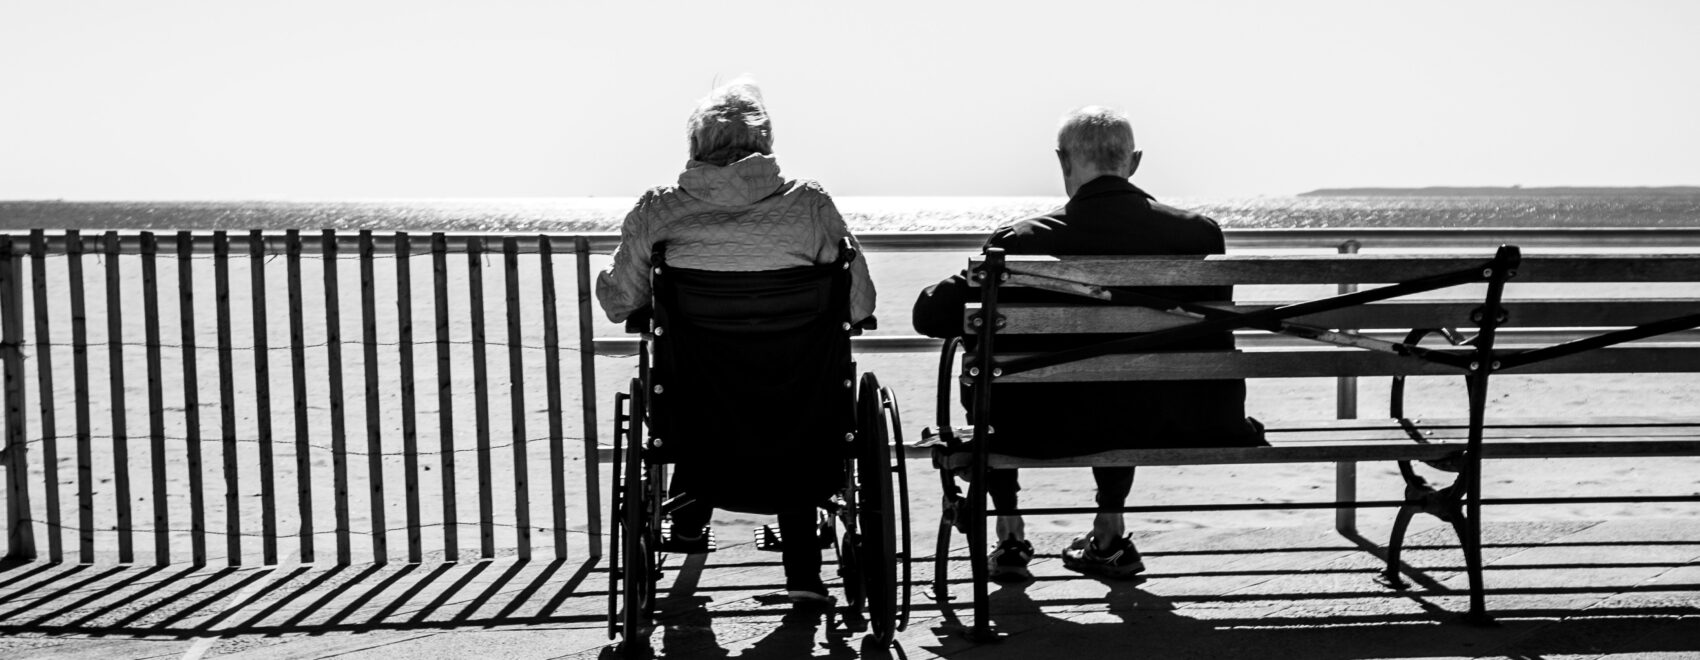 two elderly people enjoying life on every level